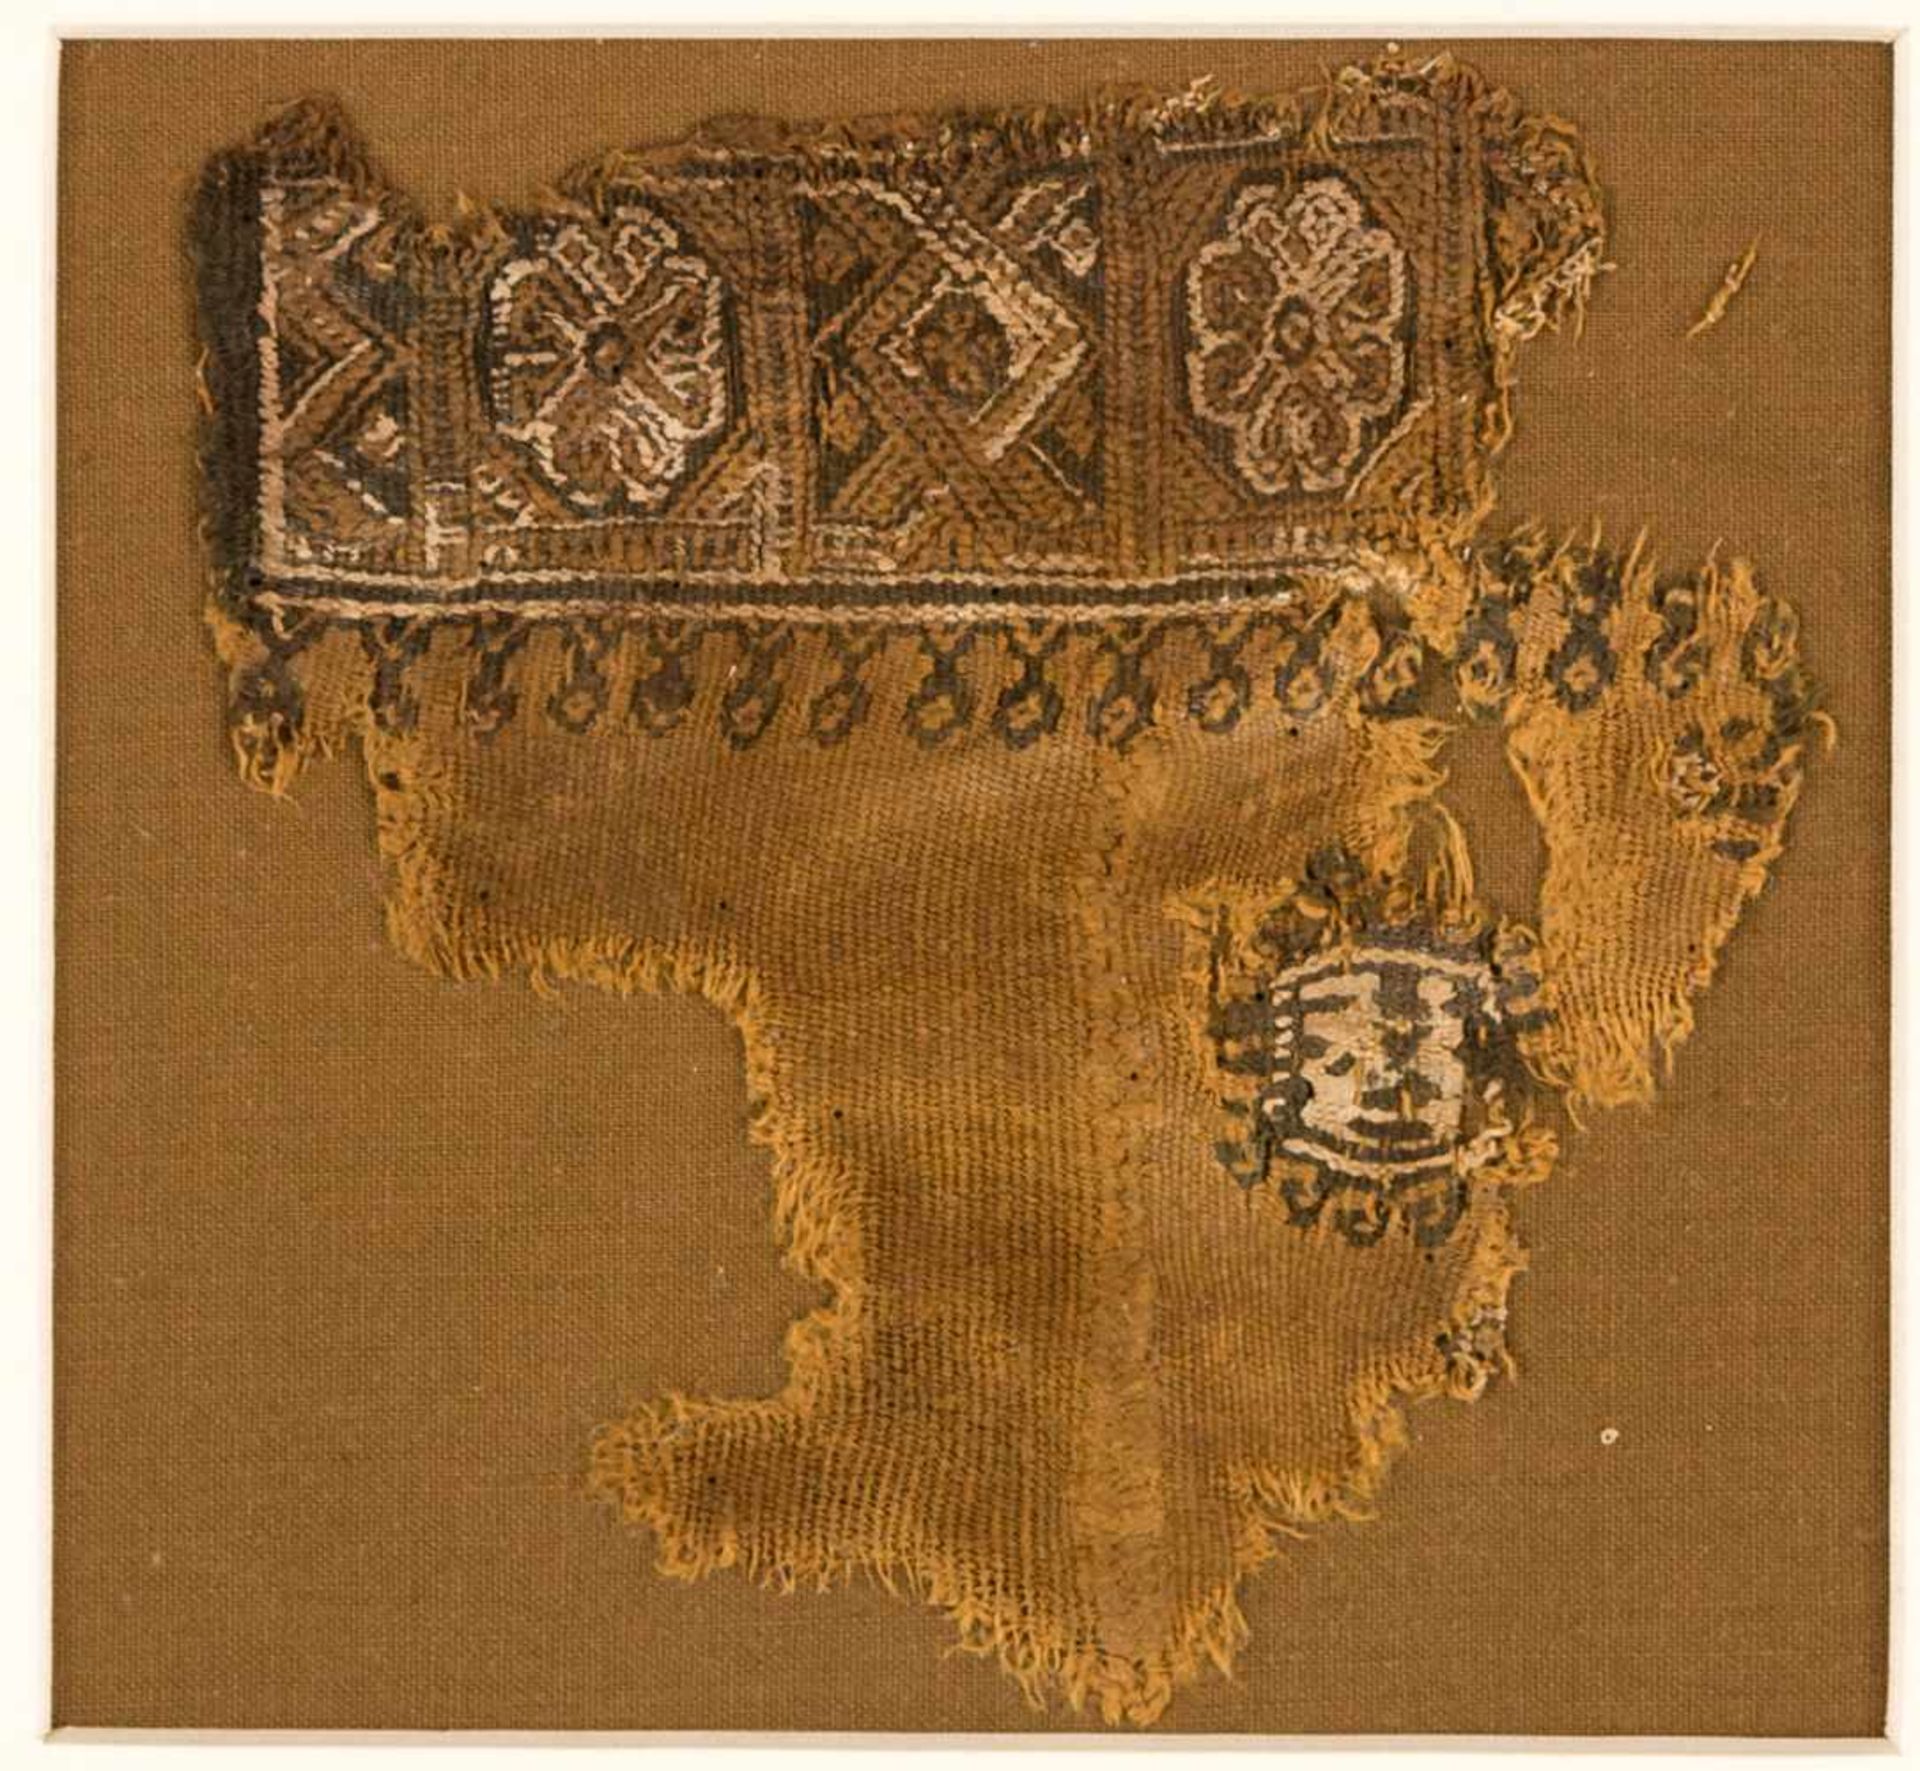 Koptisches TextilfragmentWirkerei, Leinen / Wolle, wohl 3.-8. Jh.ca. 12,5 x 12 cmProvenienz: Dr.